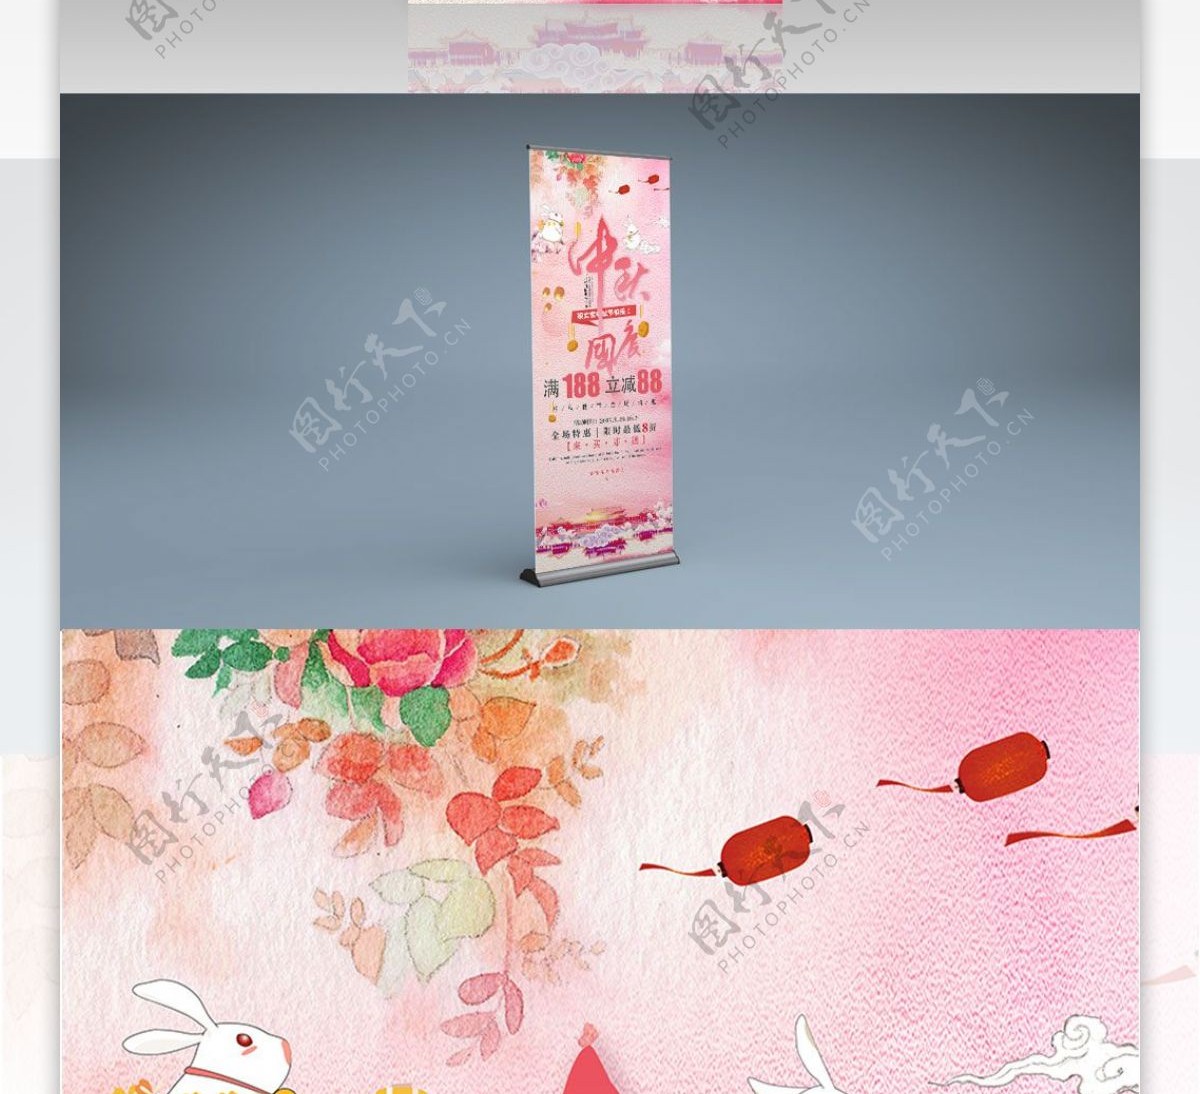 粉色手绘简约中国风中秋国庆双节促销展架